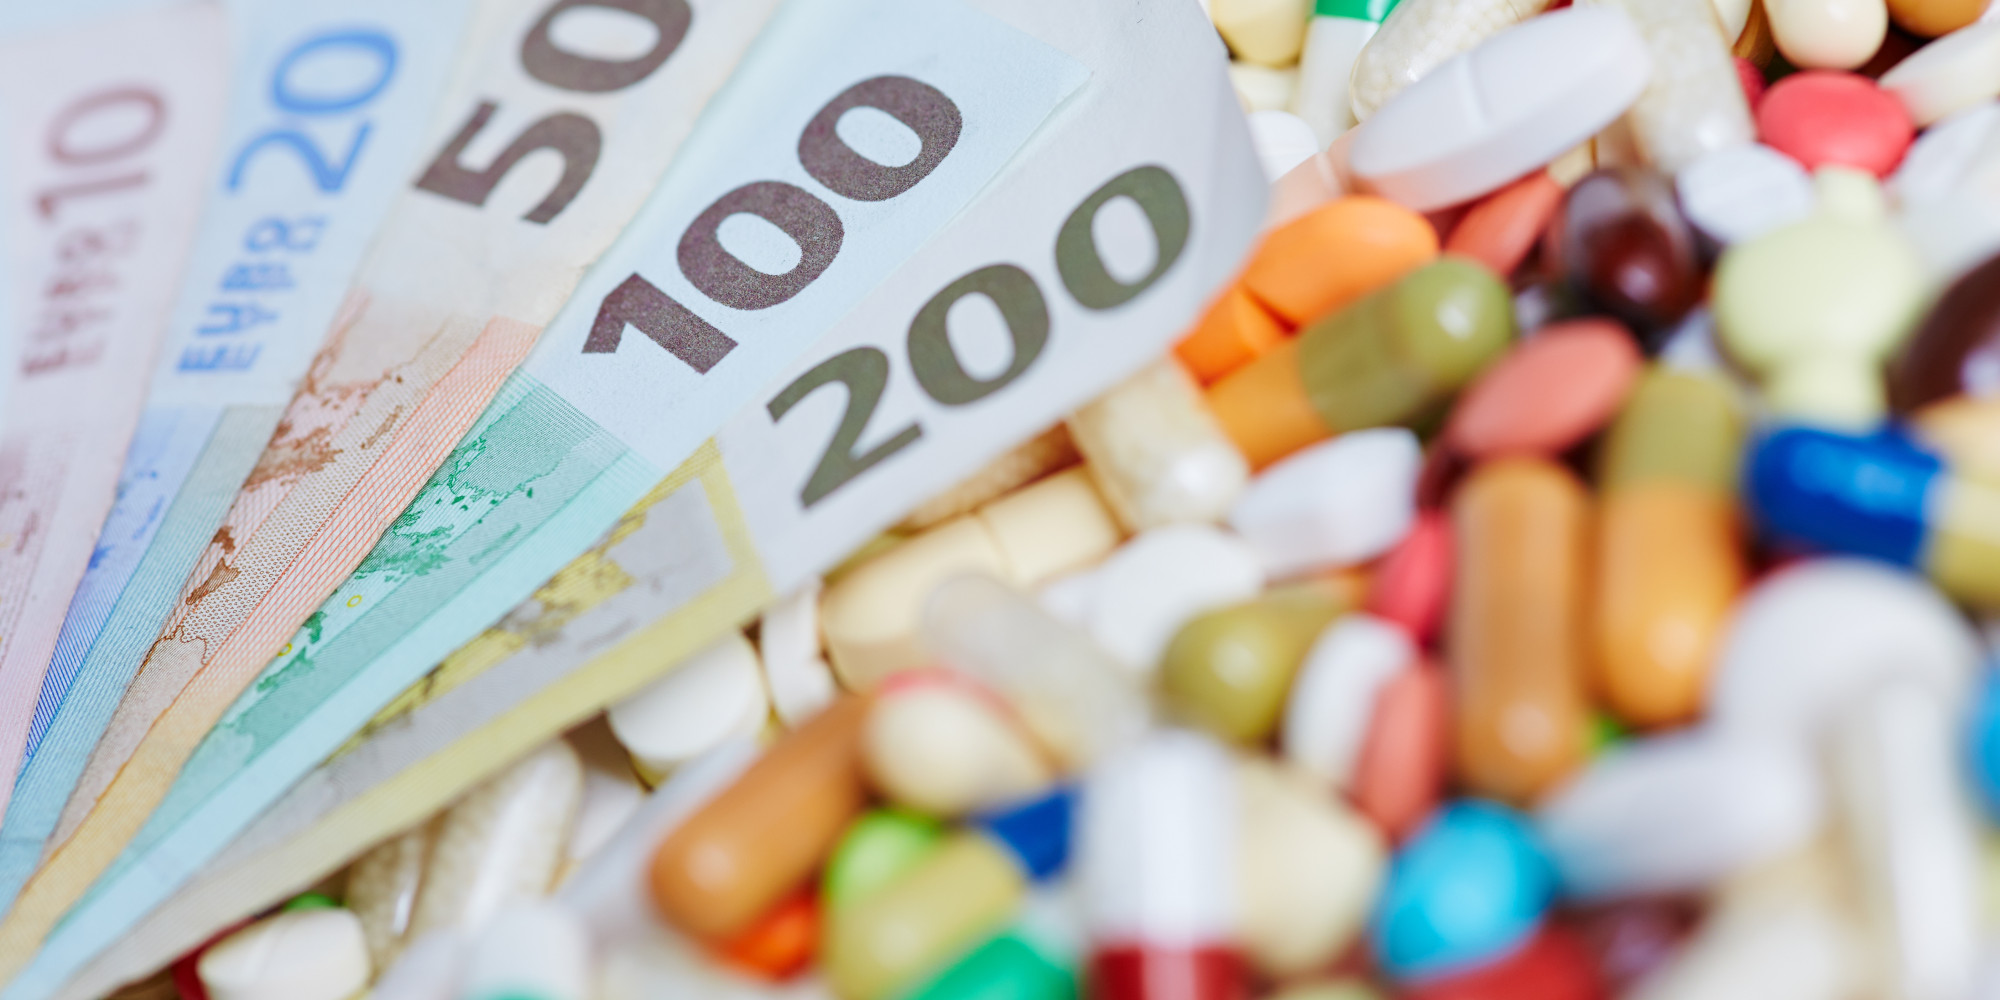 Οι οικονομικές ανησυχίες, η καινοτομία και οι προοπτικές για την φαρμακοβιομηχανία